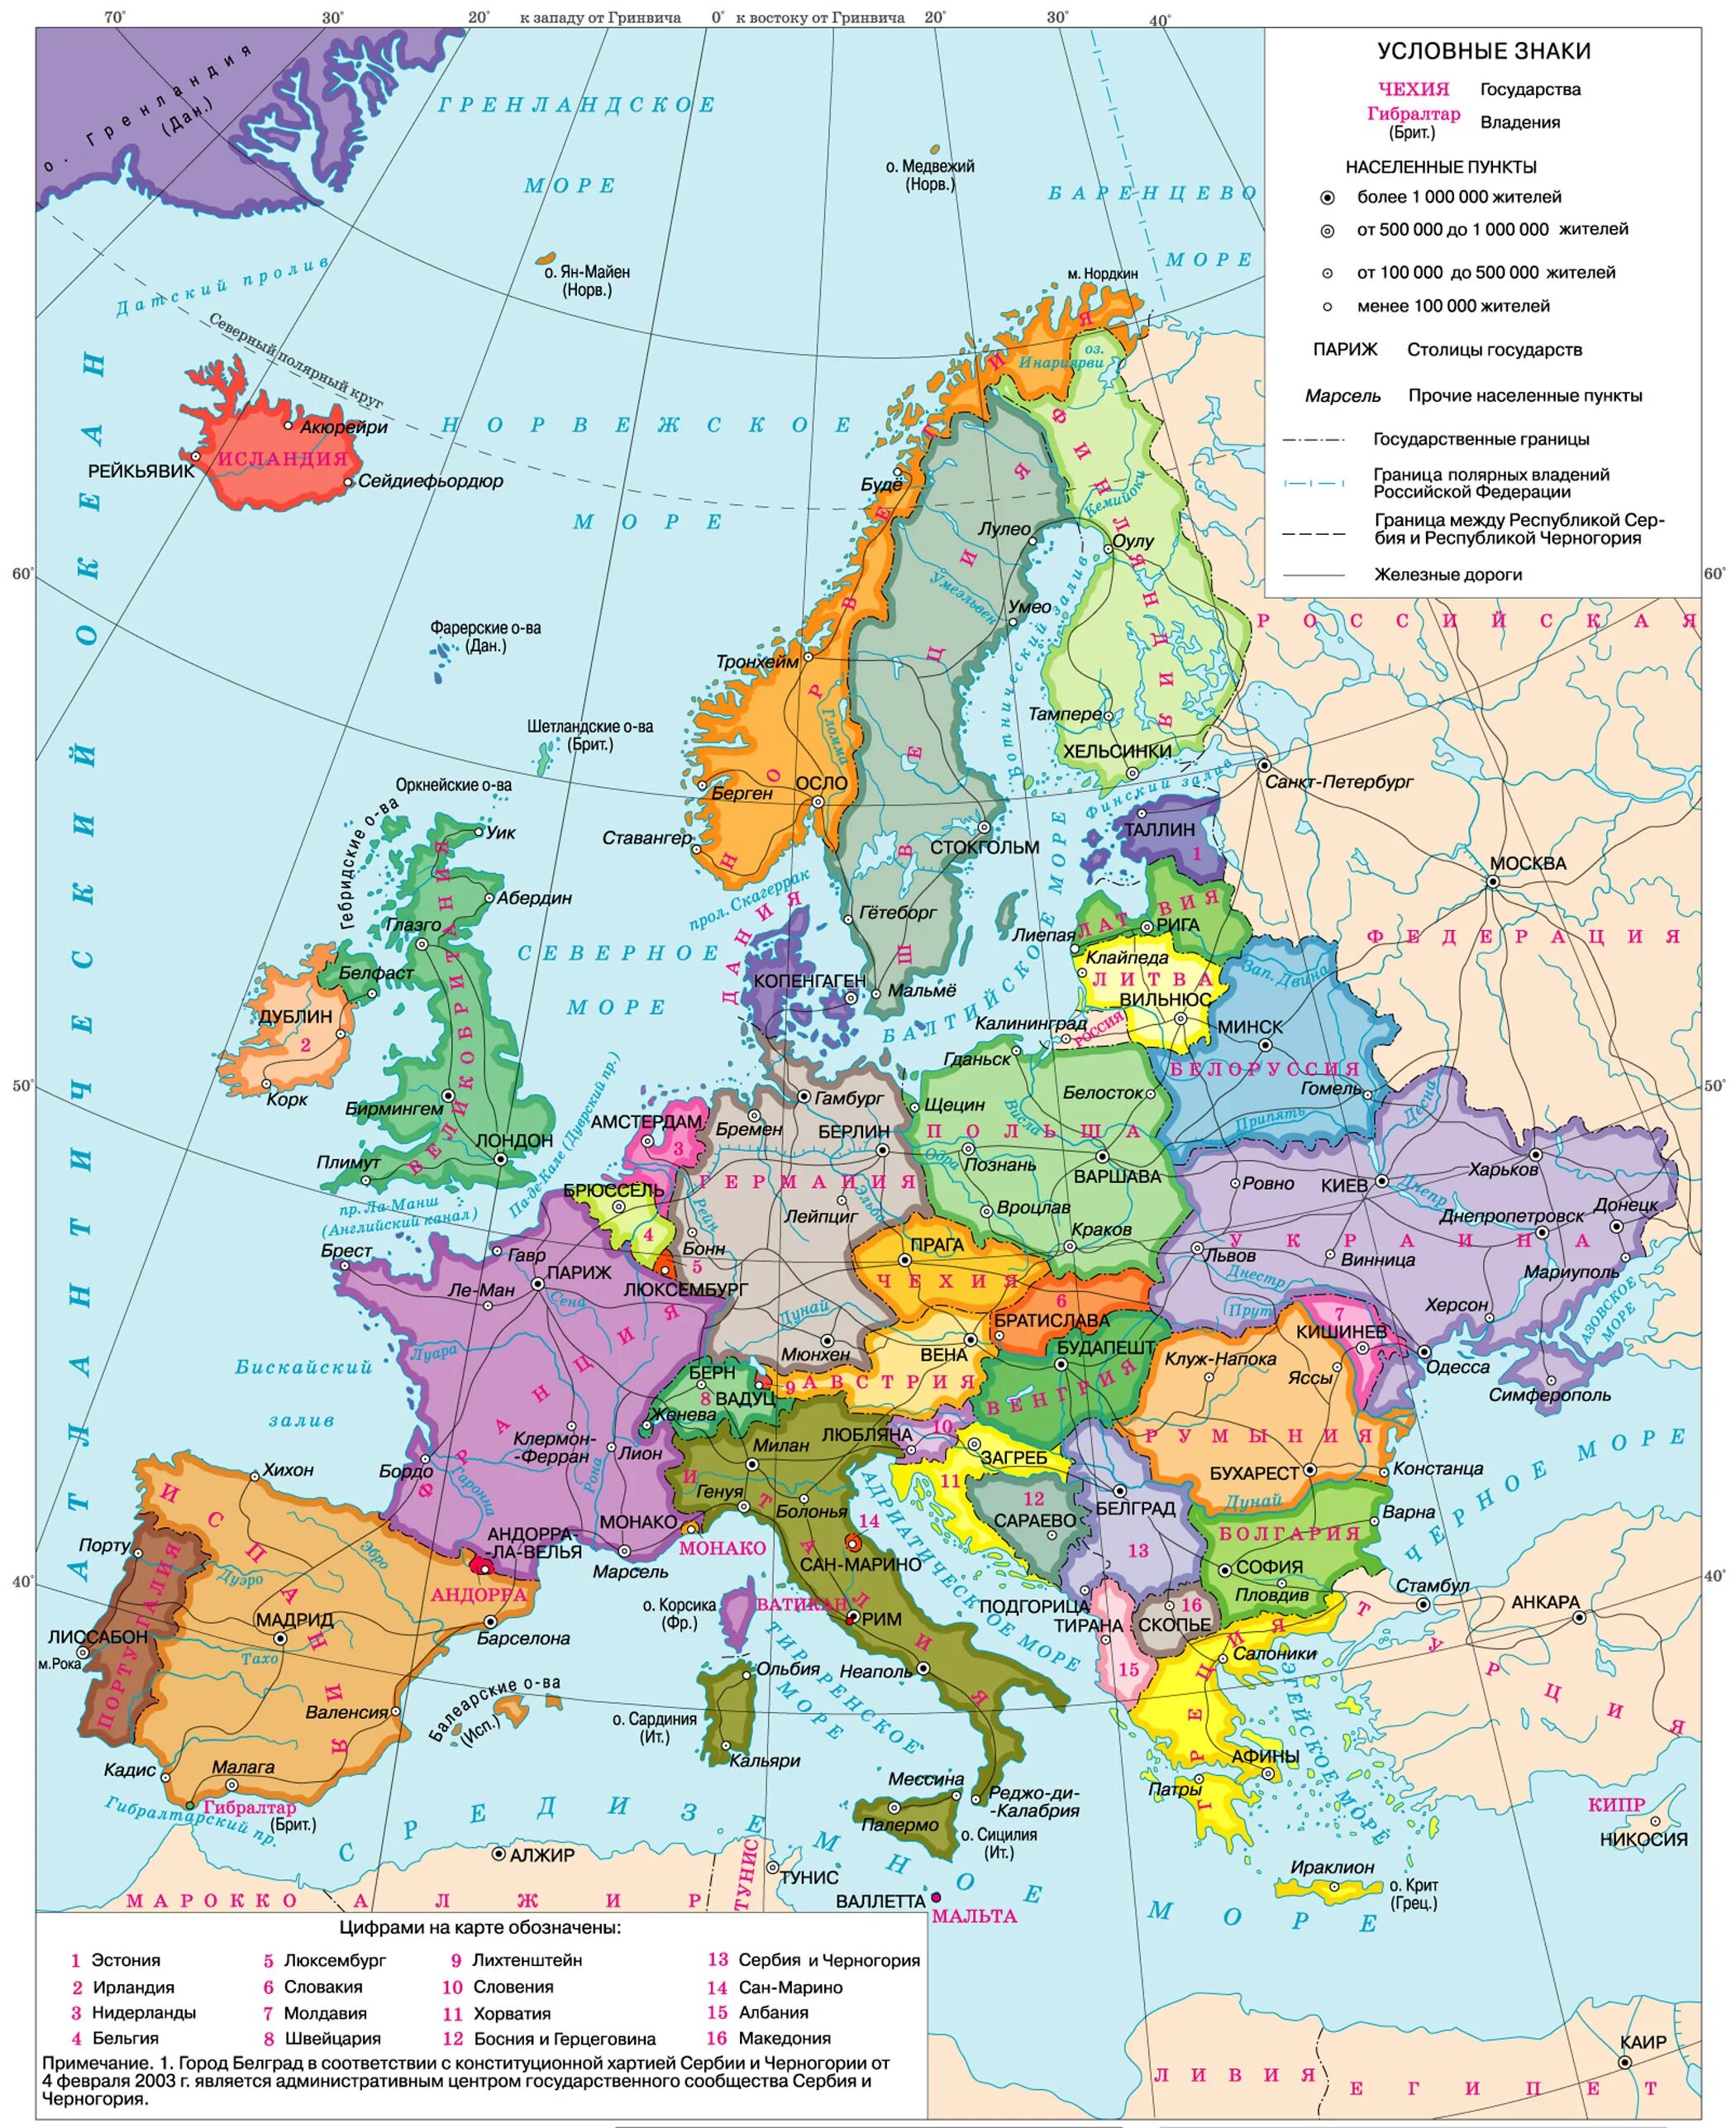 Зарубежная европа находится. Зарубежная Европа карта атлас. Атлас зарубежная Европа политическая карта. Карта зарубежной Европы со странами. Карта зарубежной Европы сос Танами и их столицами.